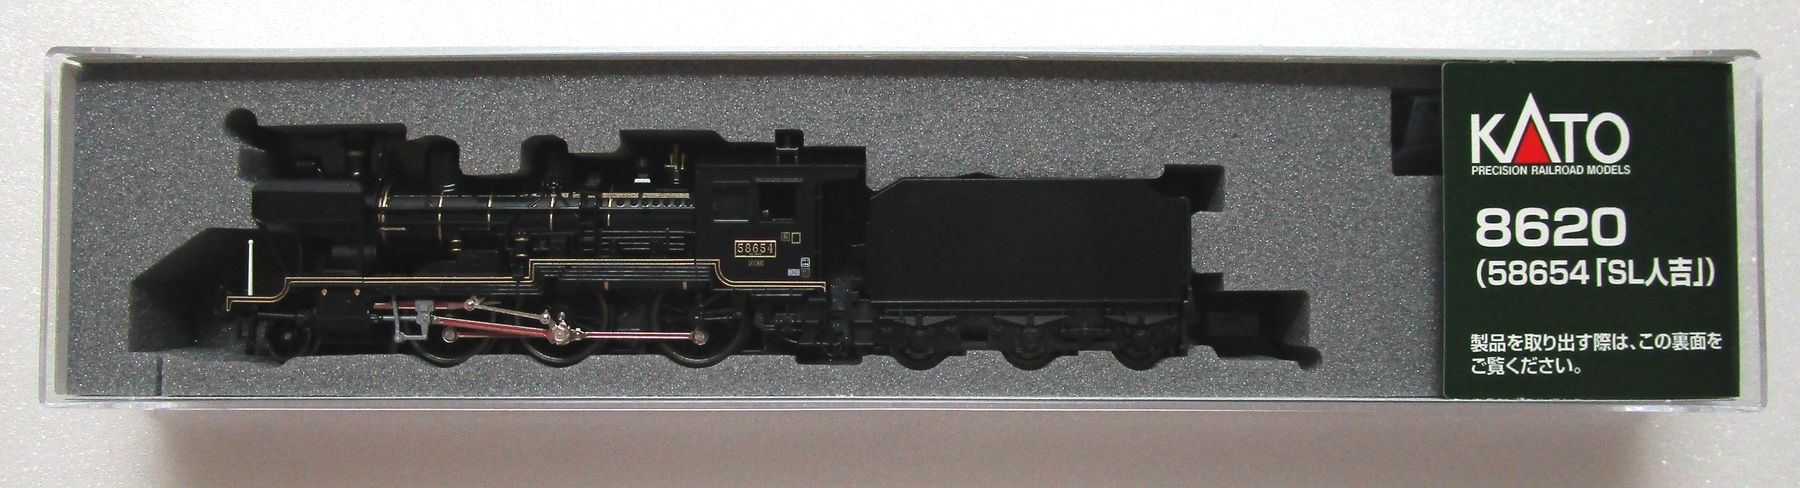 公式]鉄道模型(2028-28620 (58654「SL人吉」))商品詳細｜KATO(カトー 